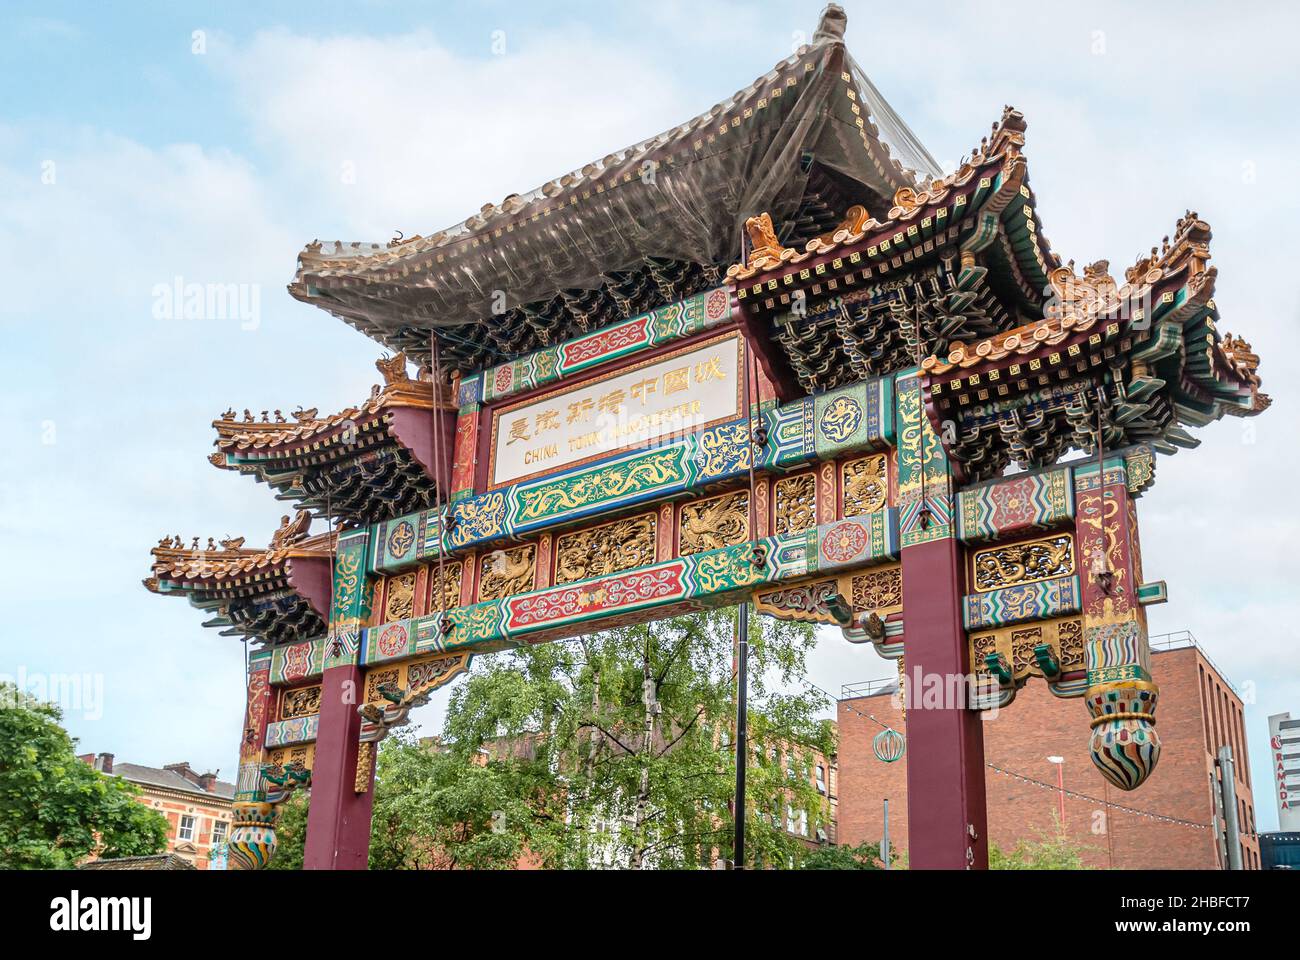 The Archway in Manchester Chinatown, England, Vereinigtes Königreich Stockfoto